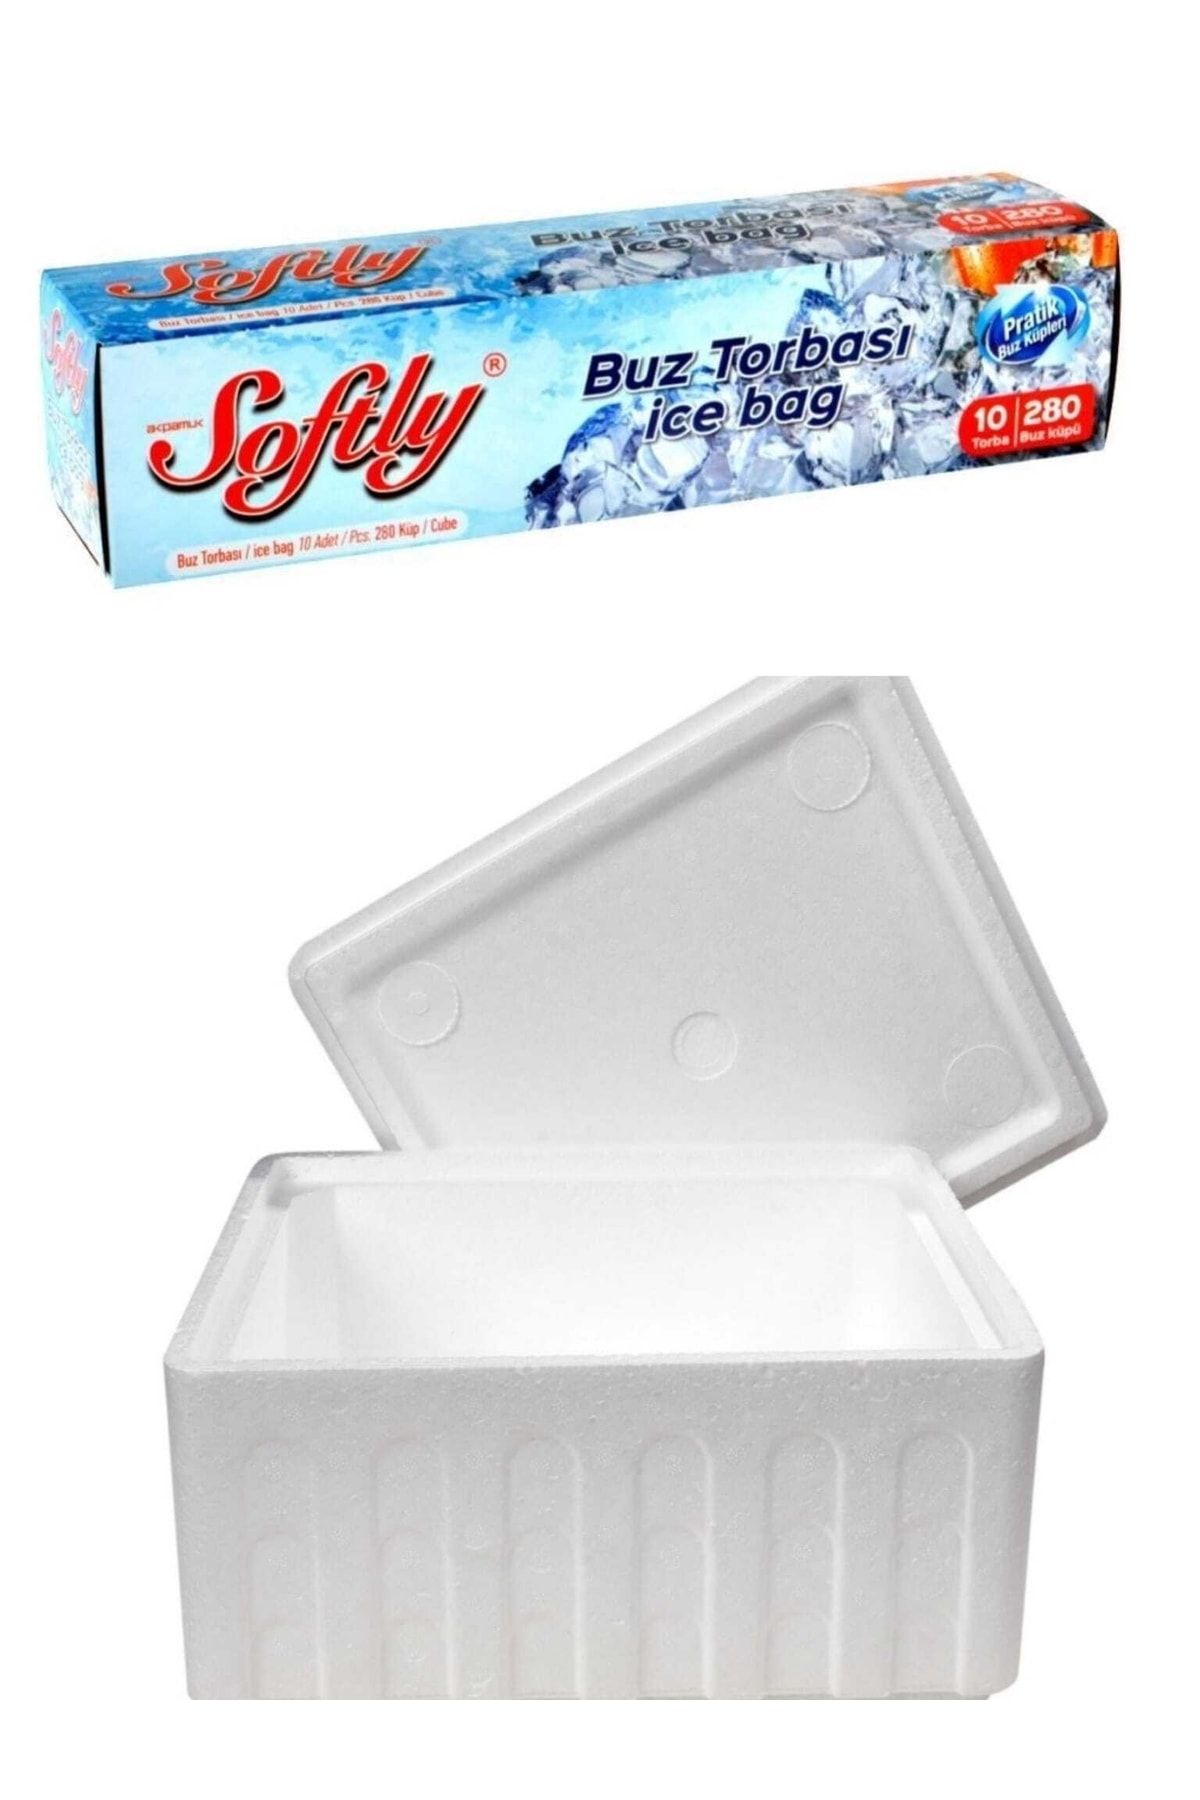 ELİF AMBALAJ Strafor Köpük Kutu 5 Kg Et Balık Gıda Taşıma Kutusu Softly Buz Torbası